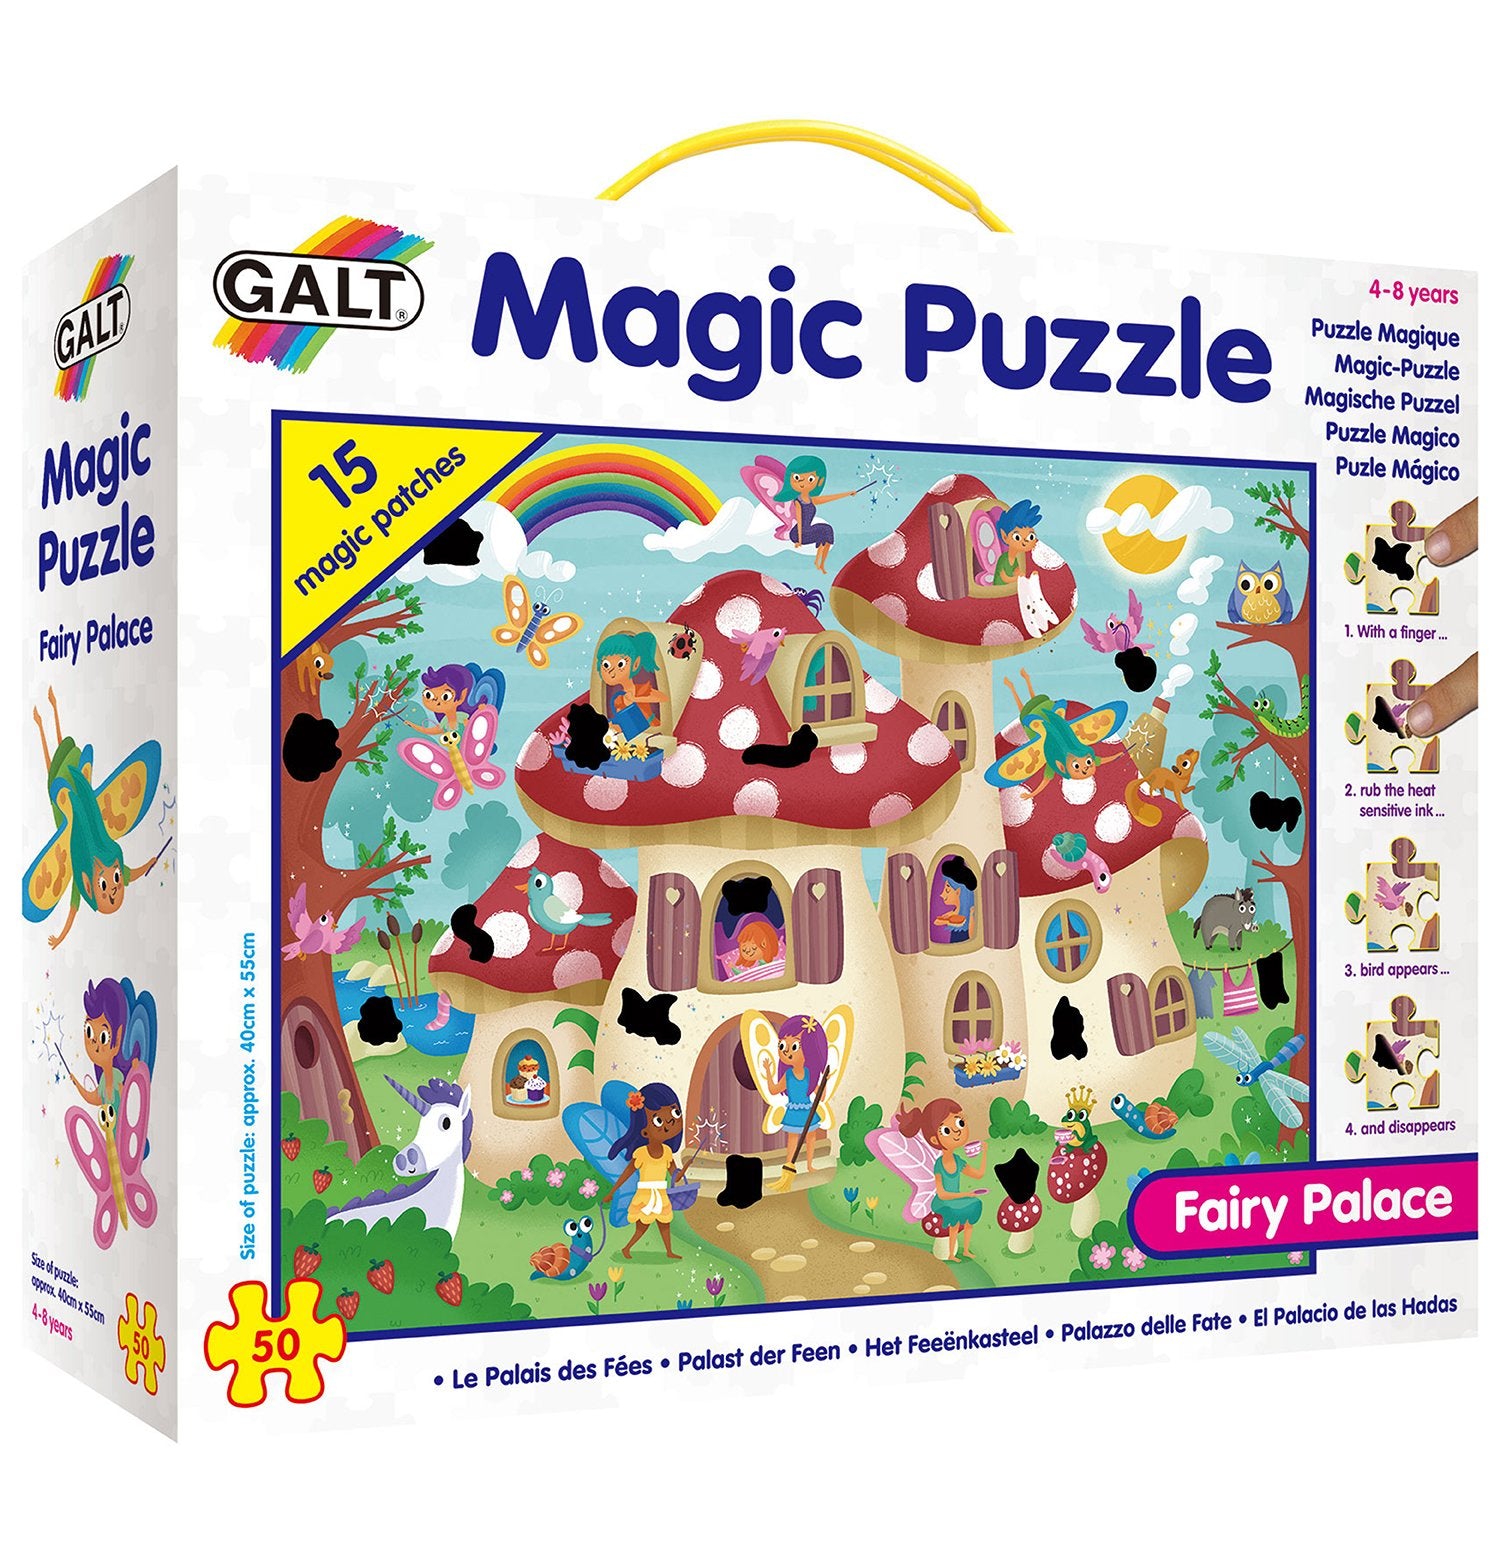 Magic Puzzles - Galt